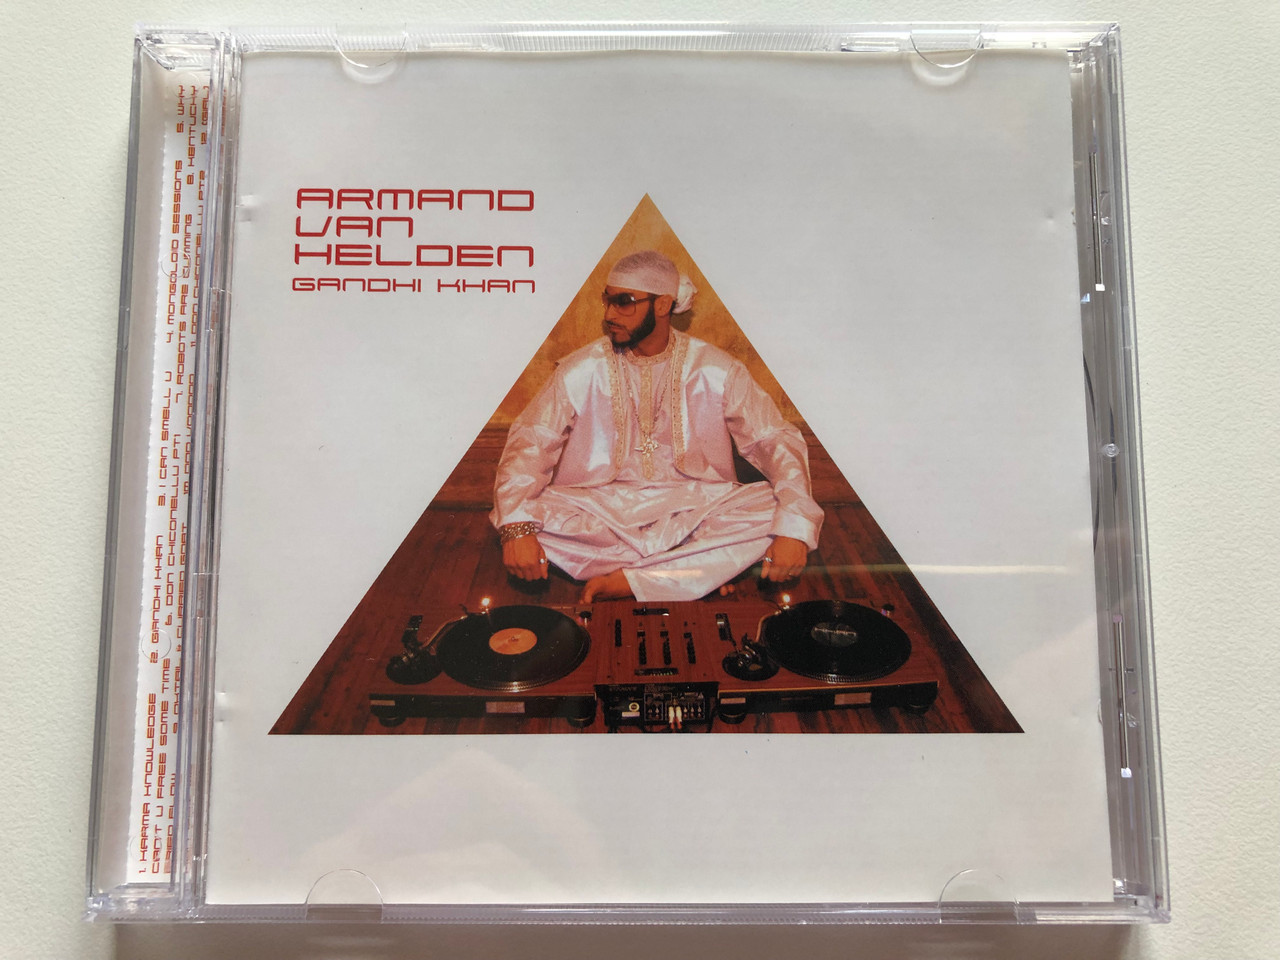 Armand Van Helden – Gandhi Khan / FFRR Audio CD 2002 / 0927-41046-2 - Bible  in My Language